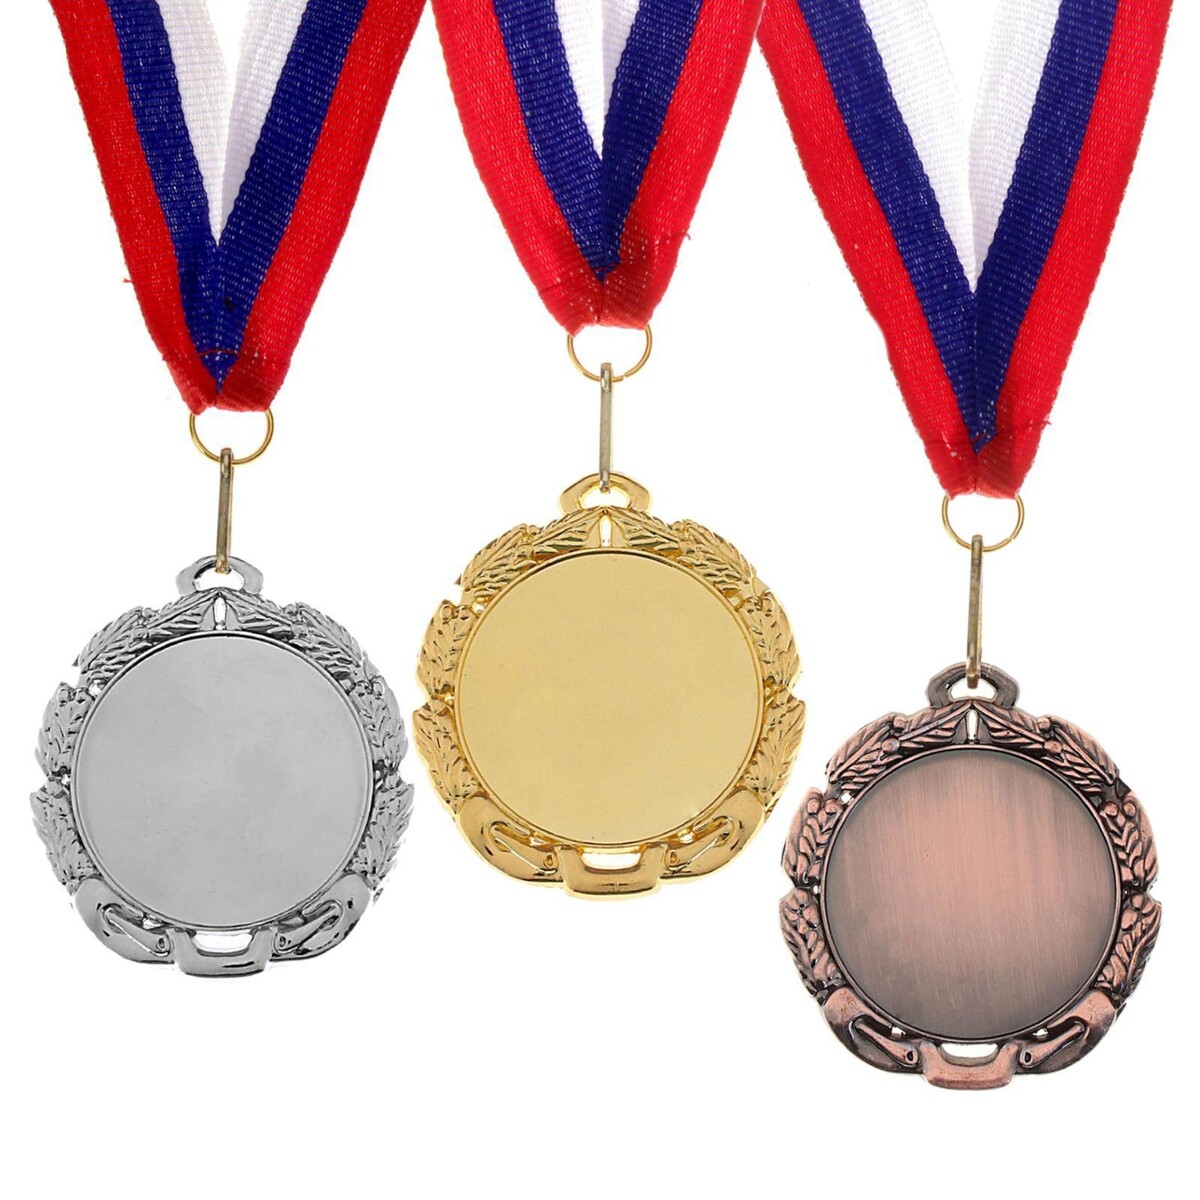 Медаль под нанесение 009 диам 7 см. цвет зол. с лентой медаль под нанесение диам 7 см зол без ленты